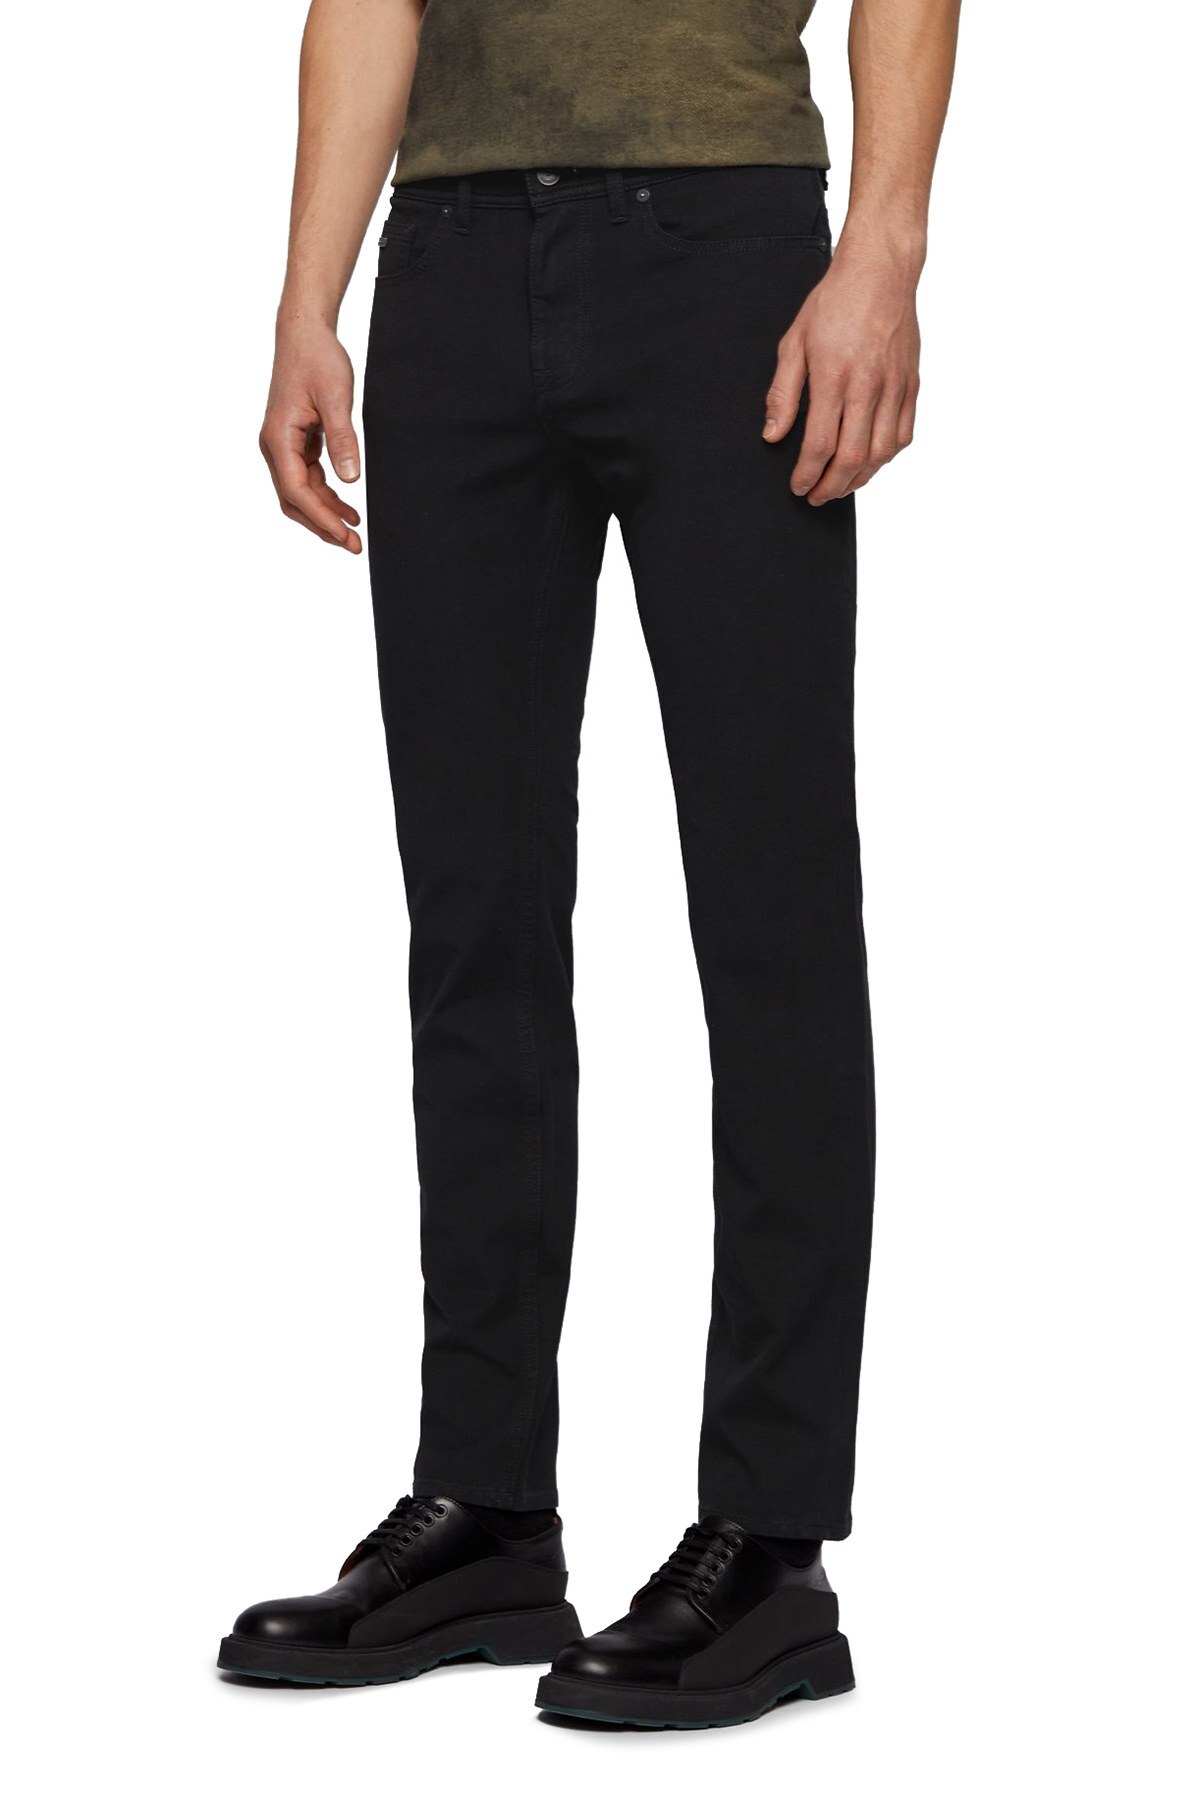 Hugo Boss Pamuklu Slim Fit Jeans Erkek Kot Pantolon 50449239 001 SİYAH